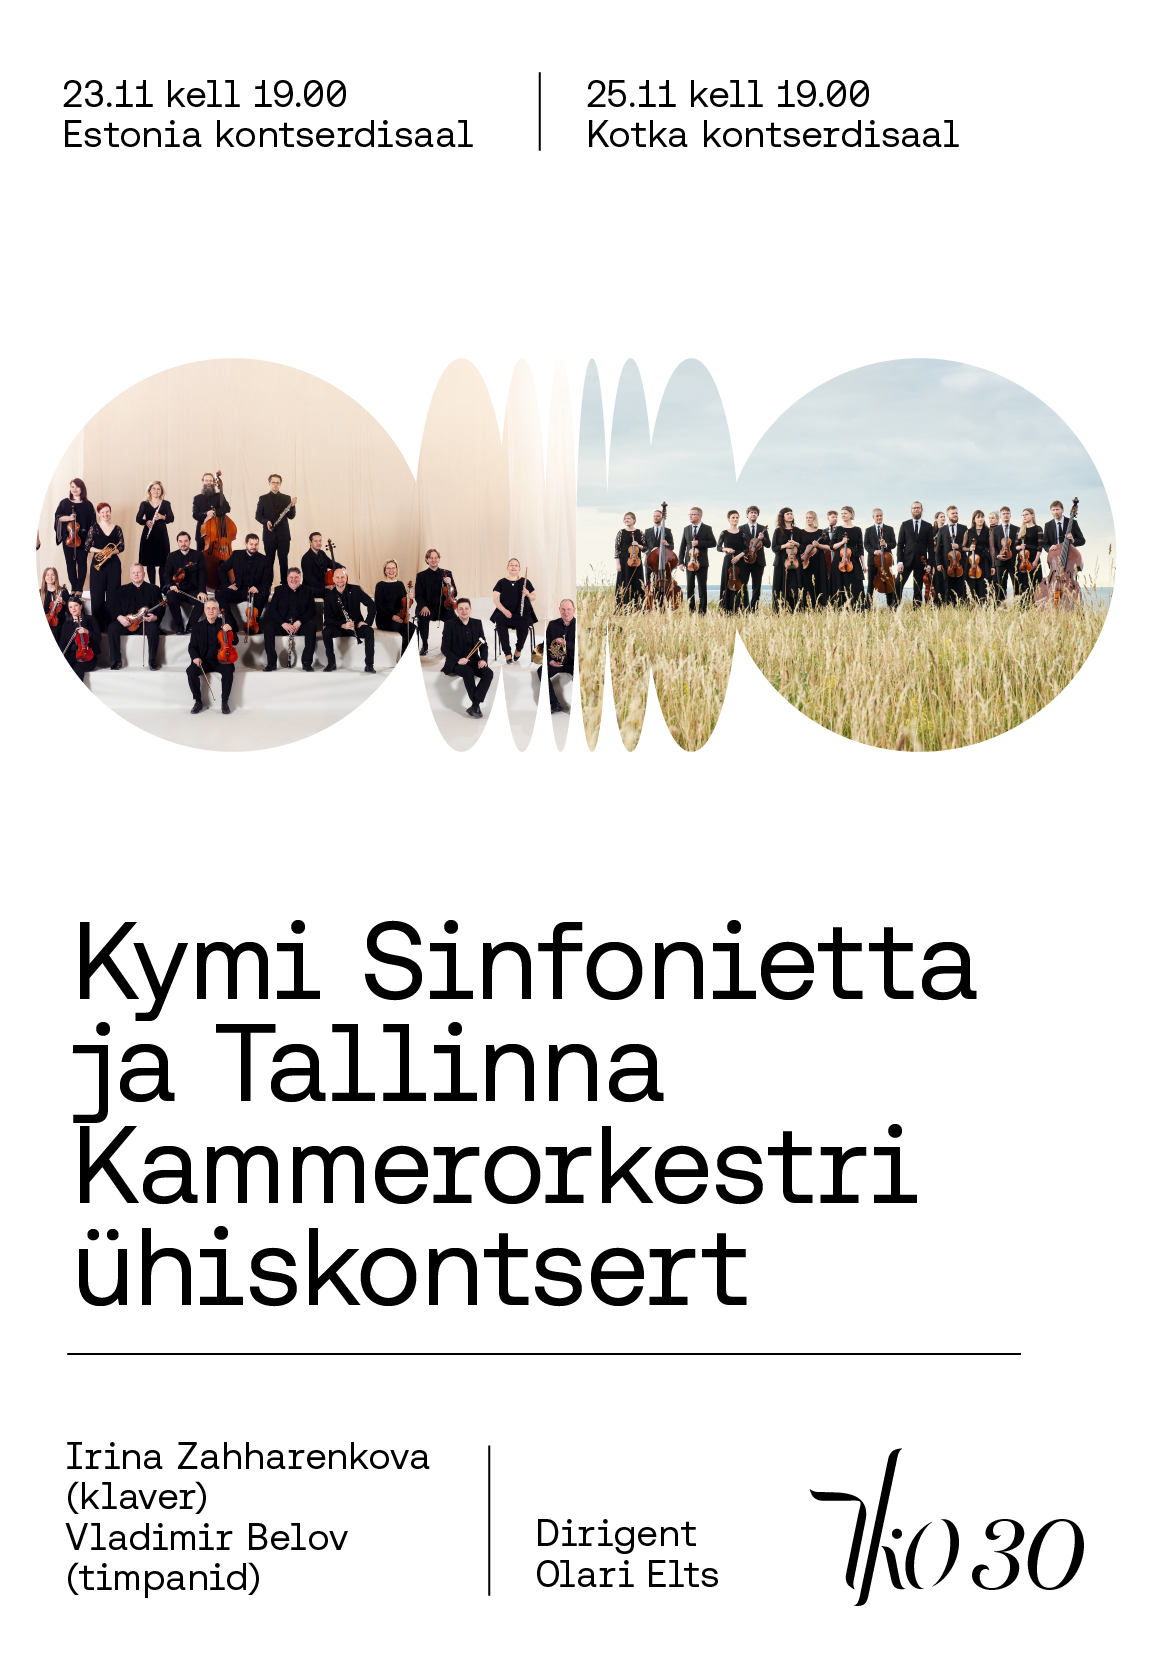 Kymi Sinfonietta ja Tallinna Kammerorkestri ühiskontsert (Kotka)